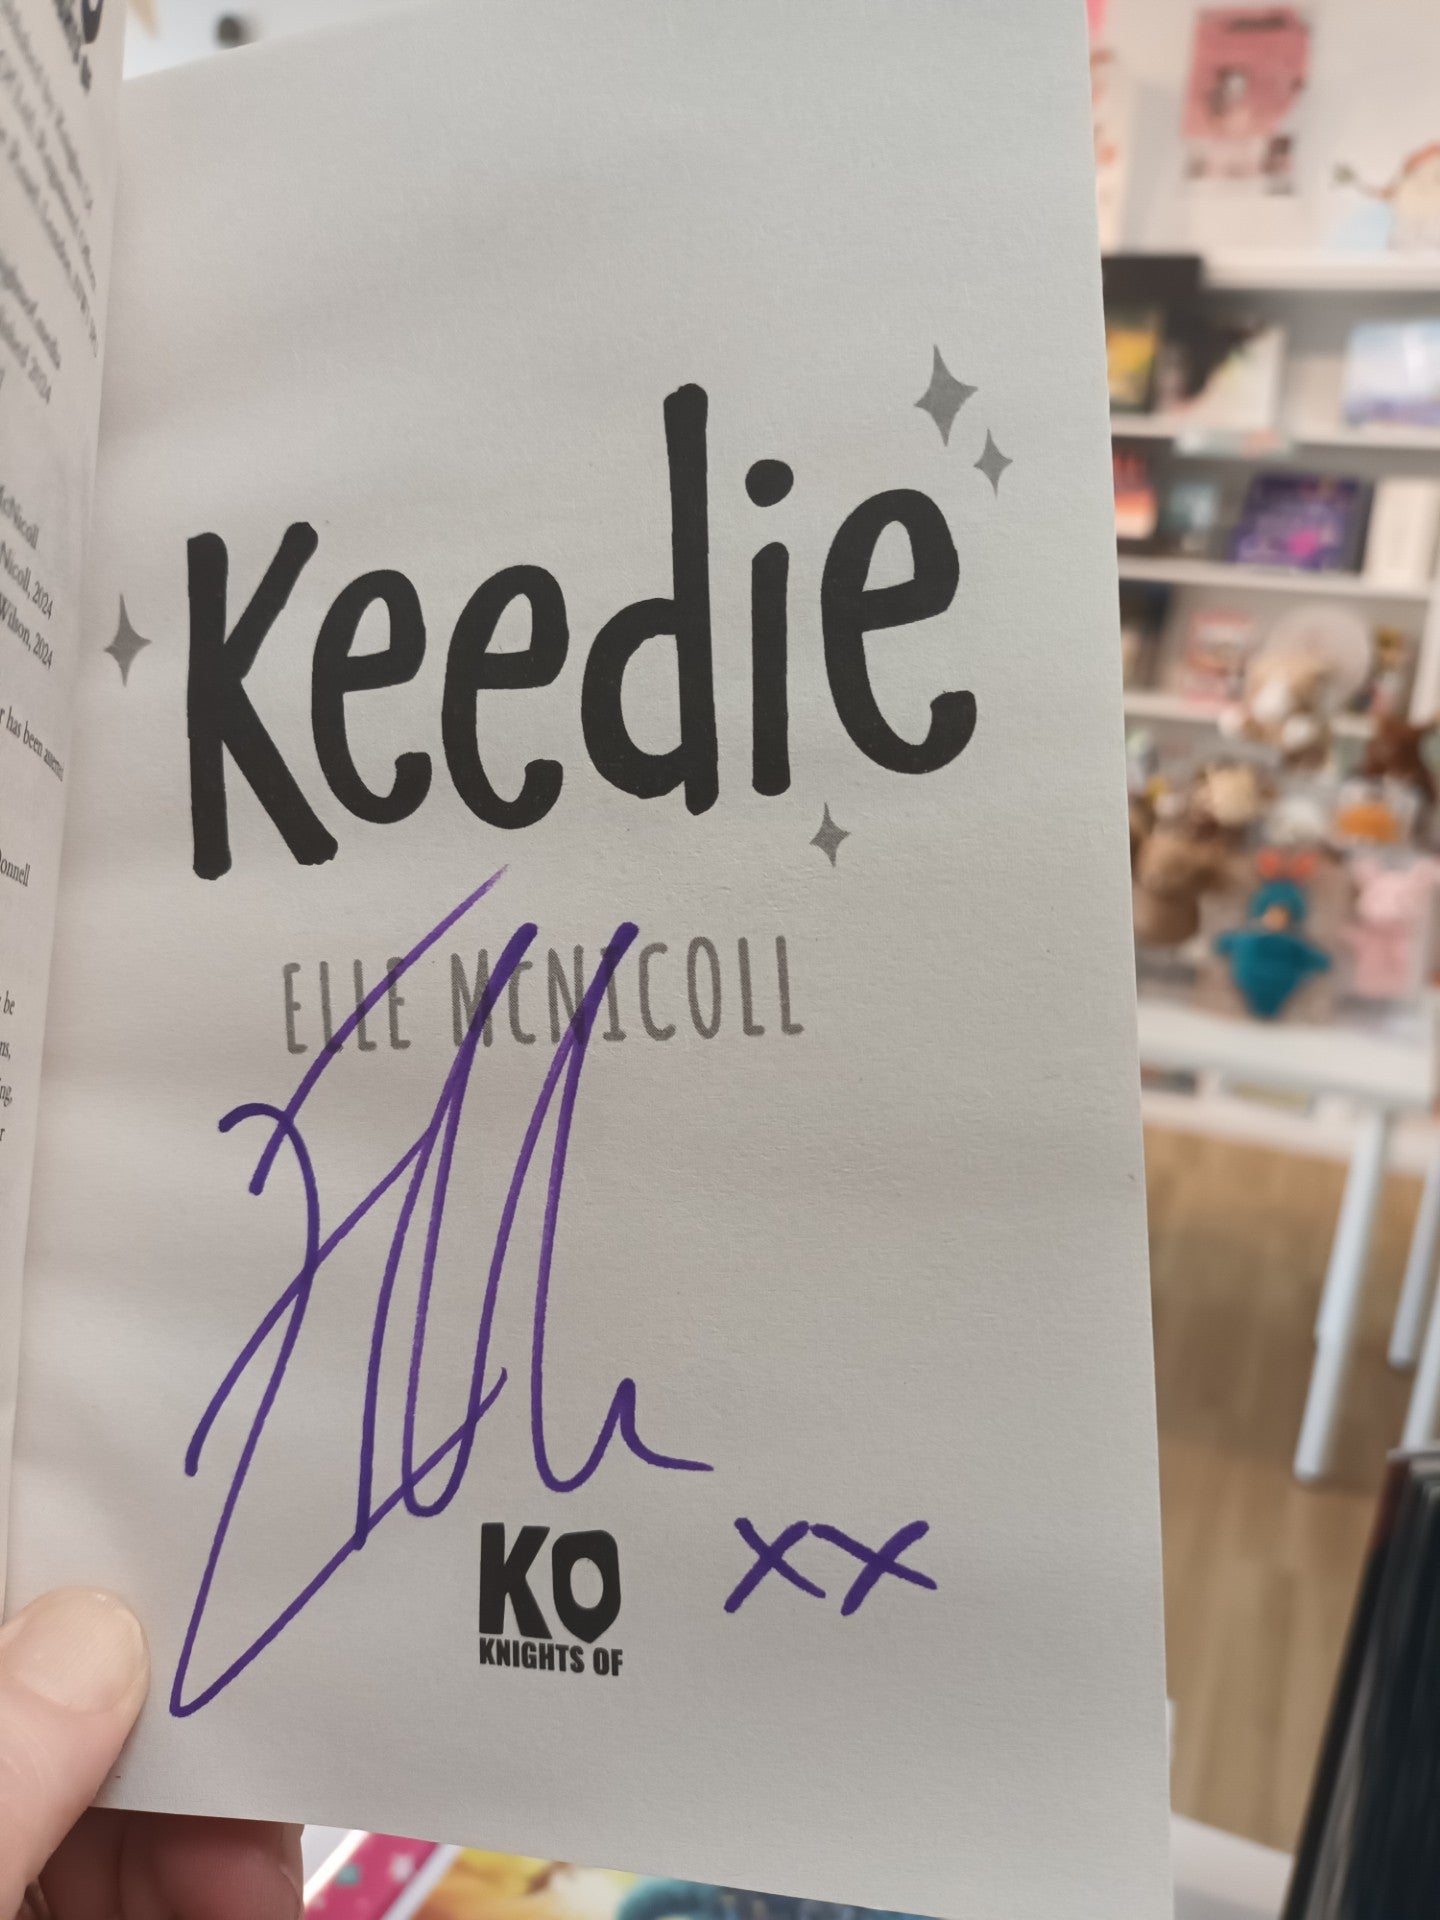 Keedie (signed copy)